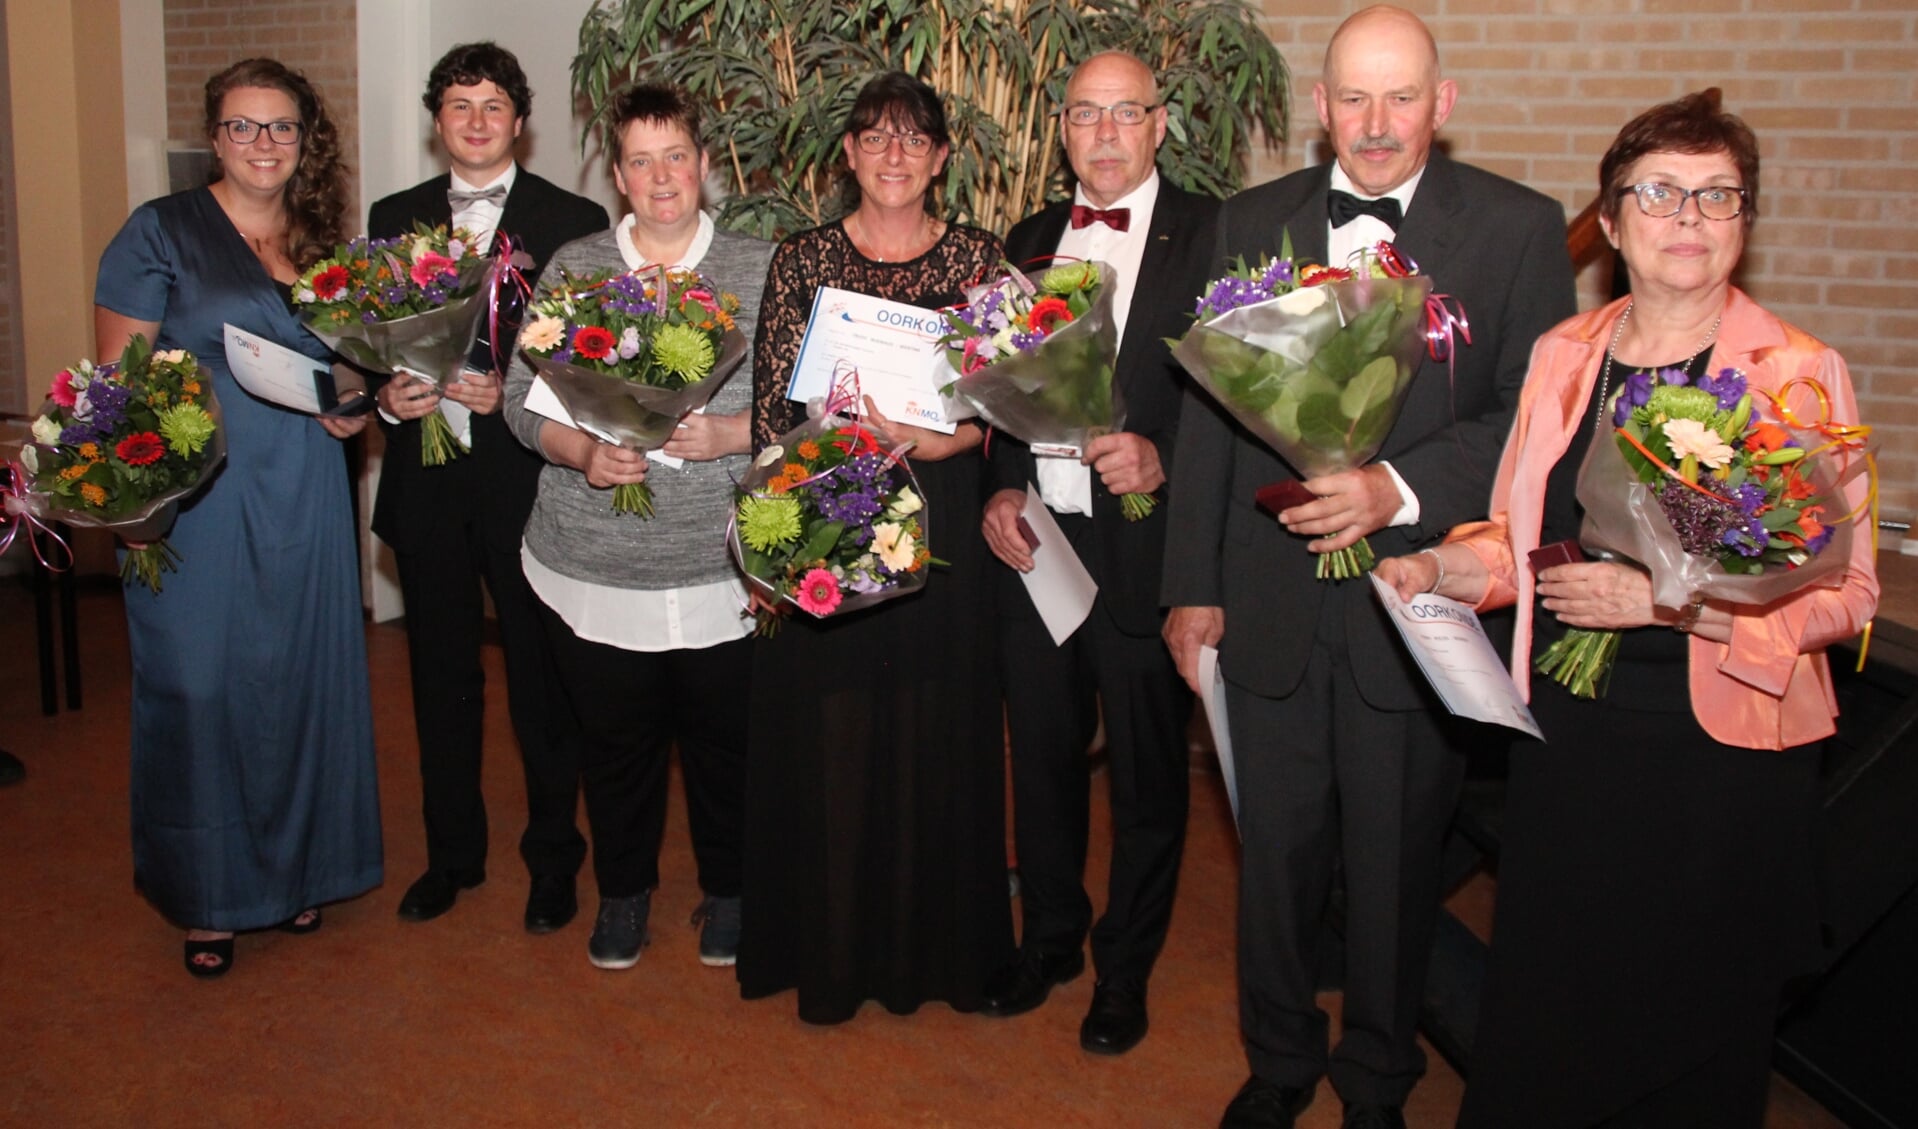 De jubilarissen op de foto  zijn van links naar rechts:  Karin Romeijnders, Christiaan Jolink, Ada Lubbers, Trudy Nijenhuis, Ap Roenhorst, Albert Menkveld en Henny Peelen. Foto: Eddy Jolink